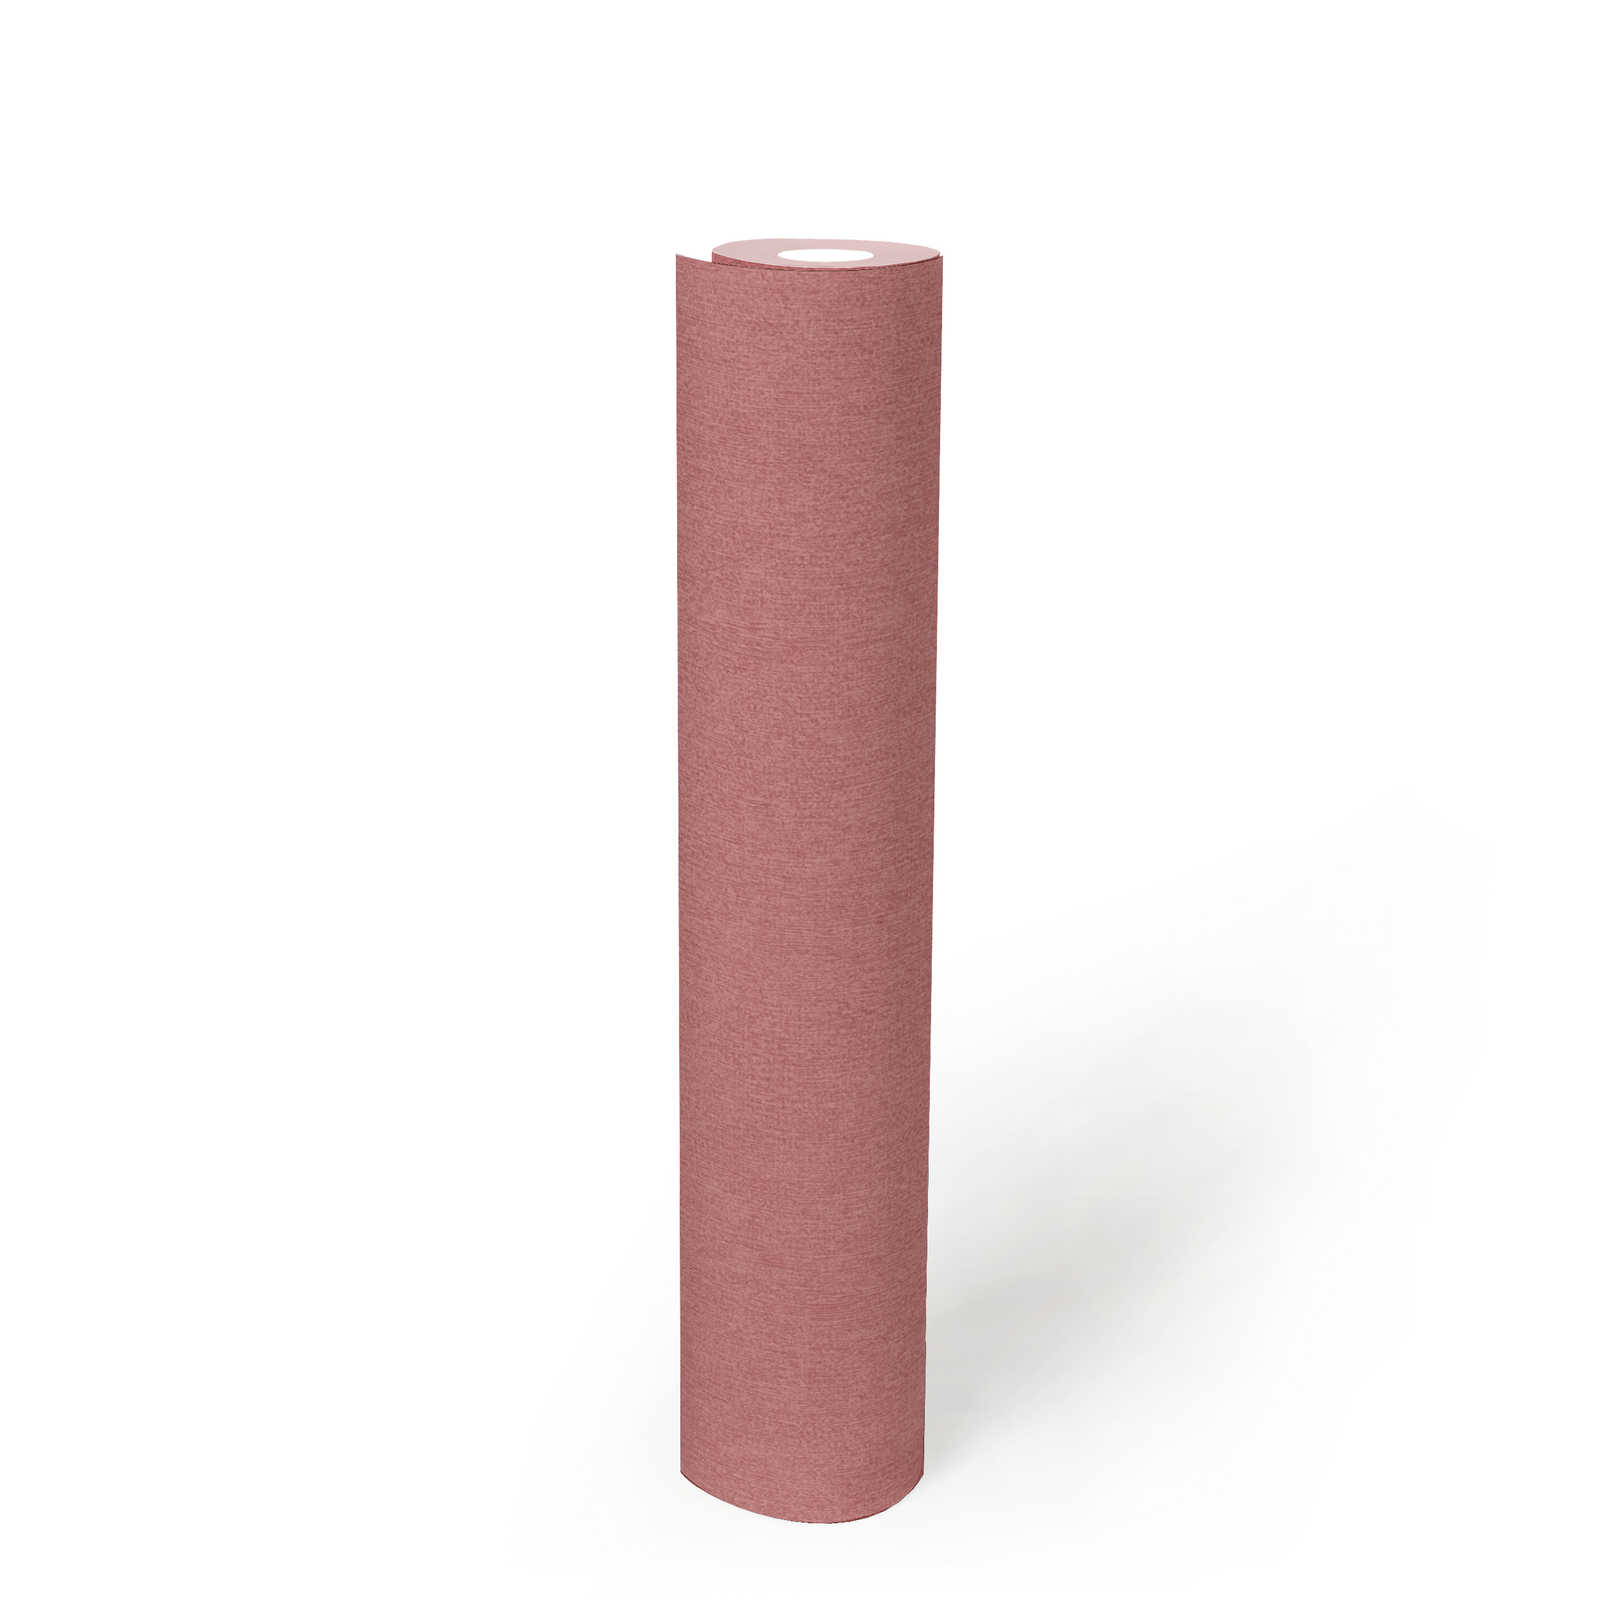             Non-woven wallpaper plain & matt with structure pattern - pink
        